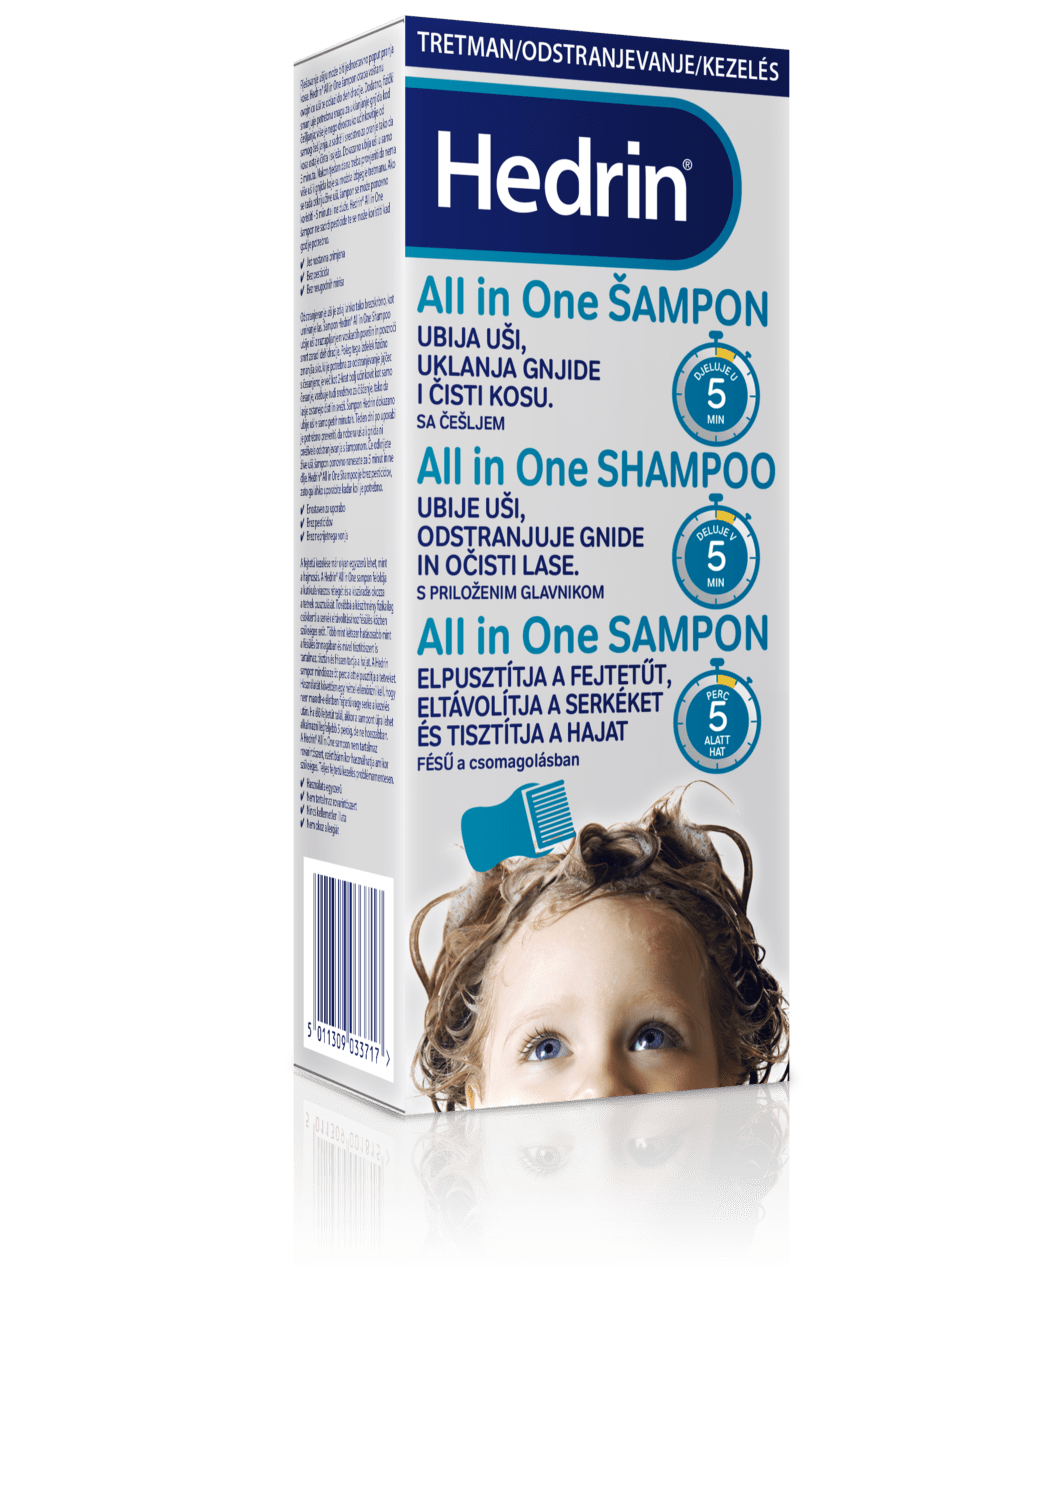 Hedrin All in One šampon za odstranjevanje uši in gnid, 200 ml